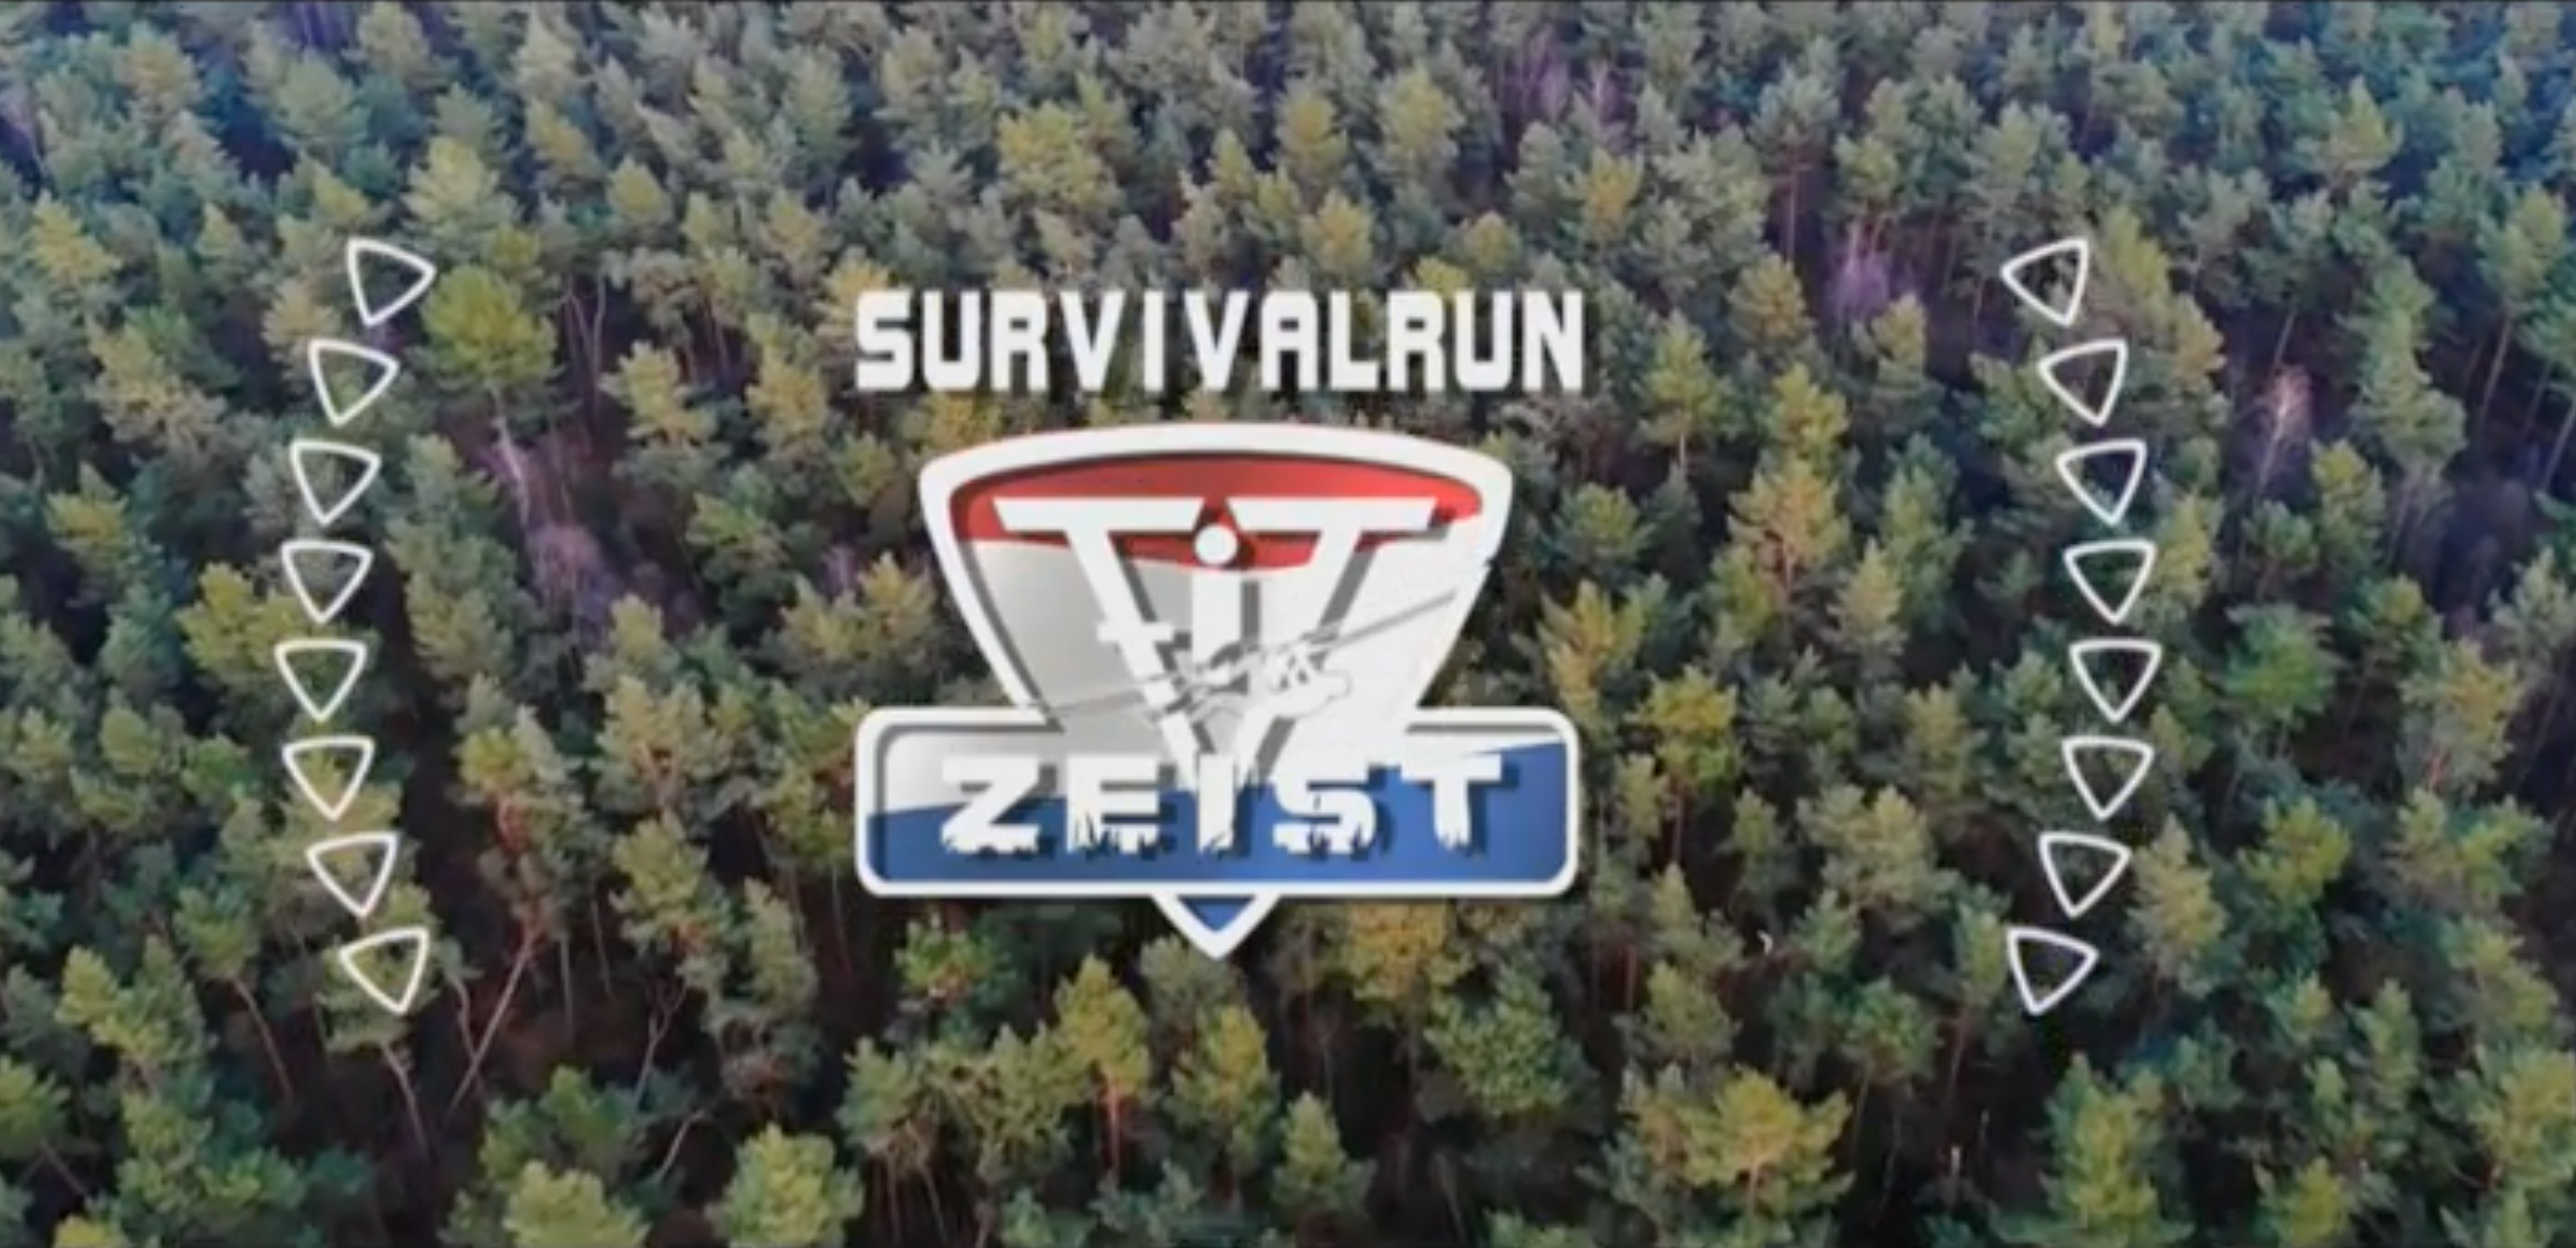 Video van NK KSR Mannen – Survivalrun FIT Zeist